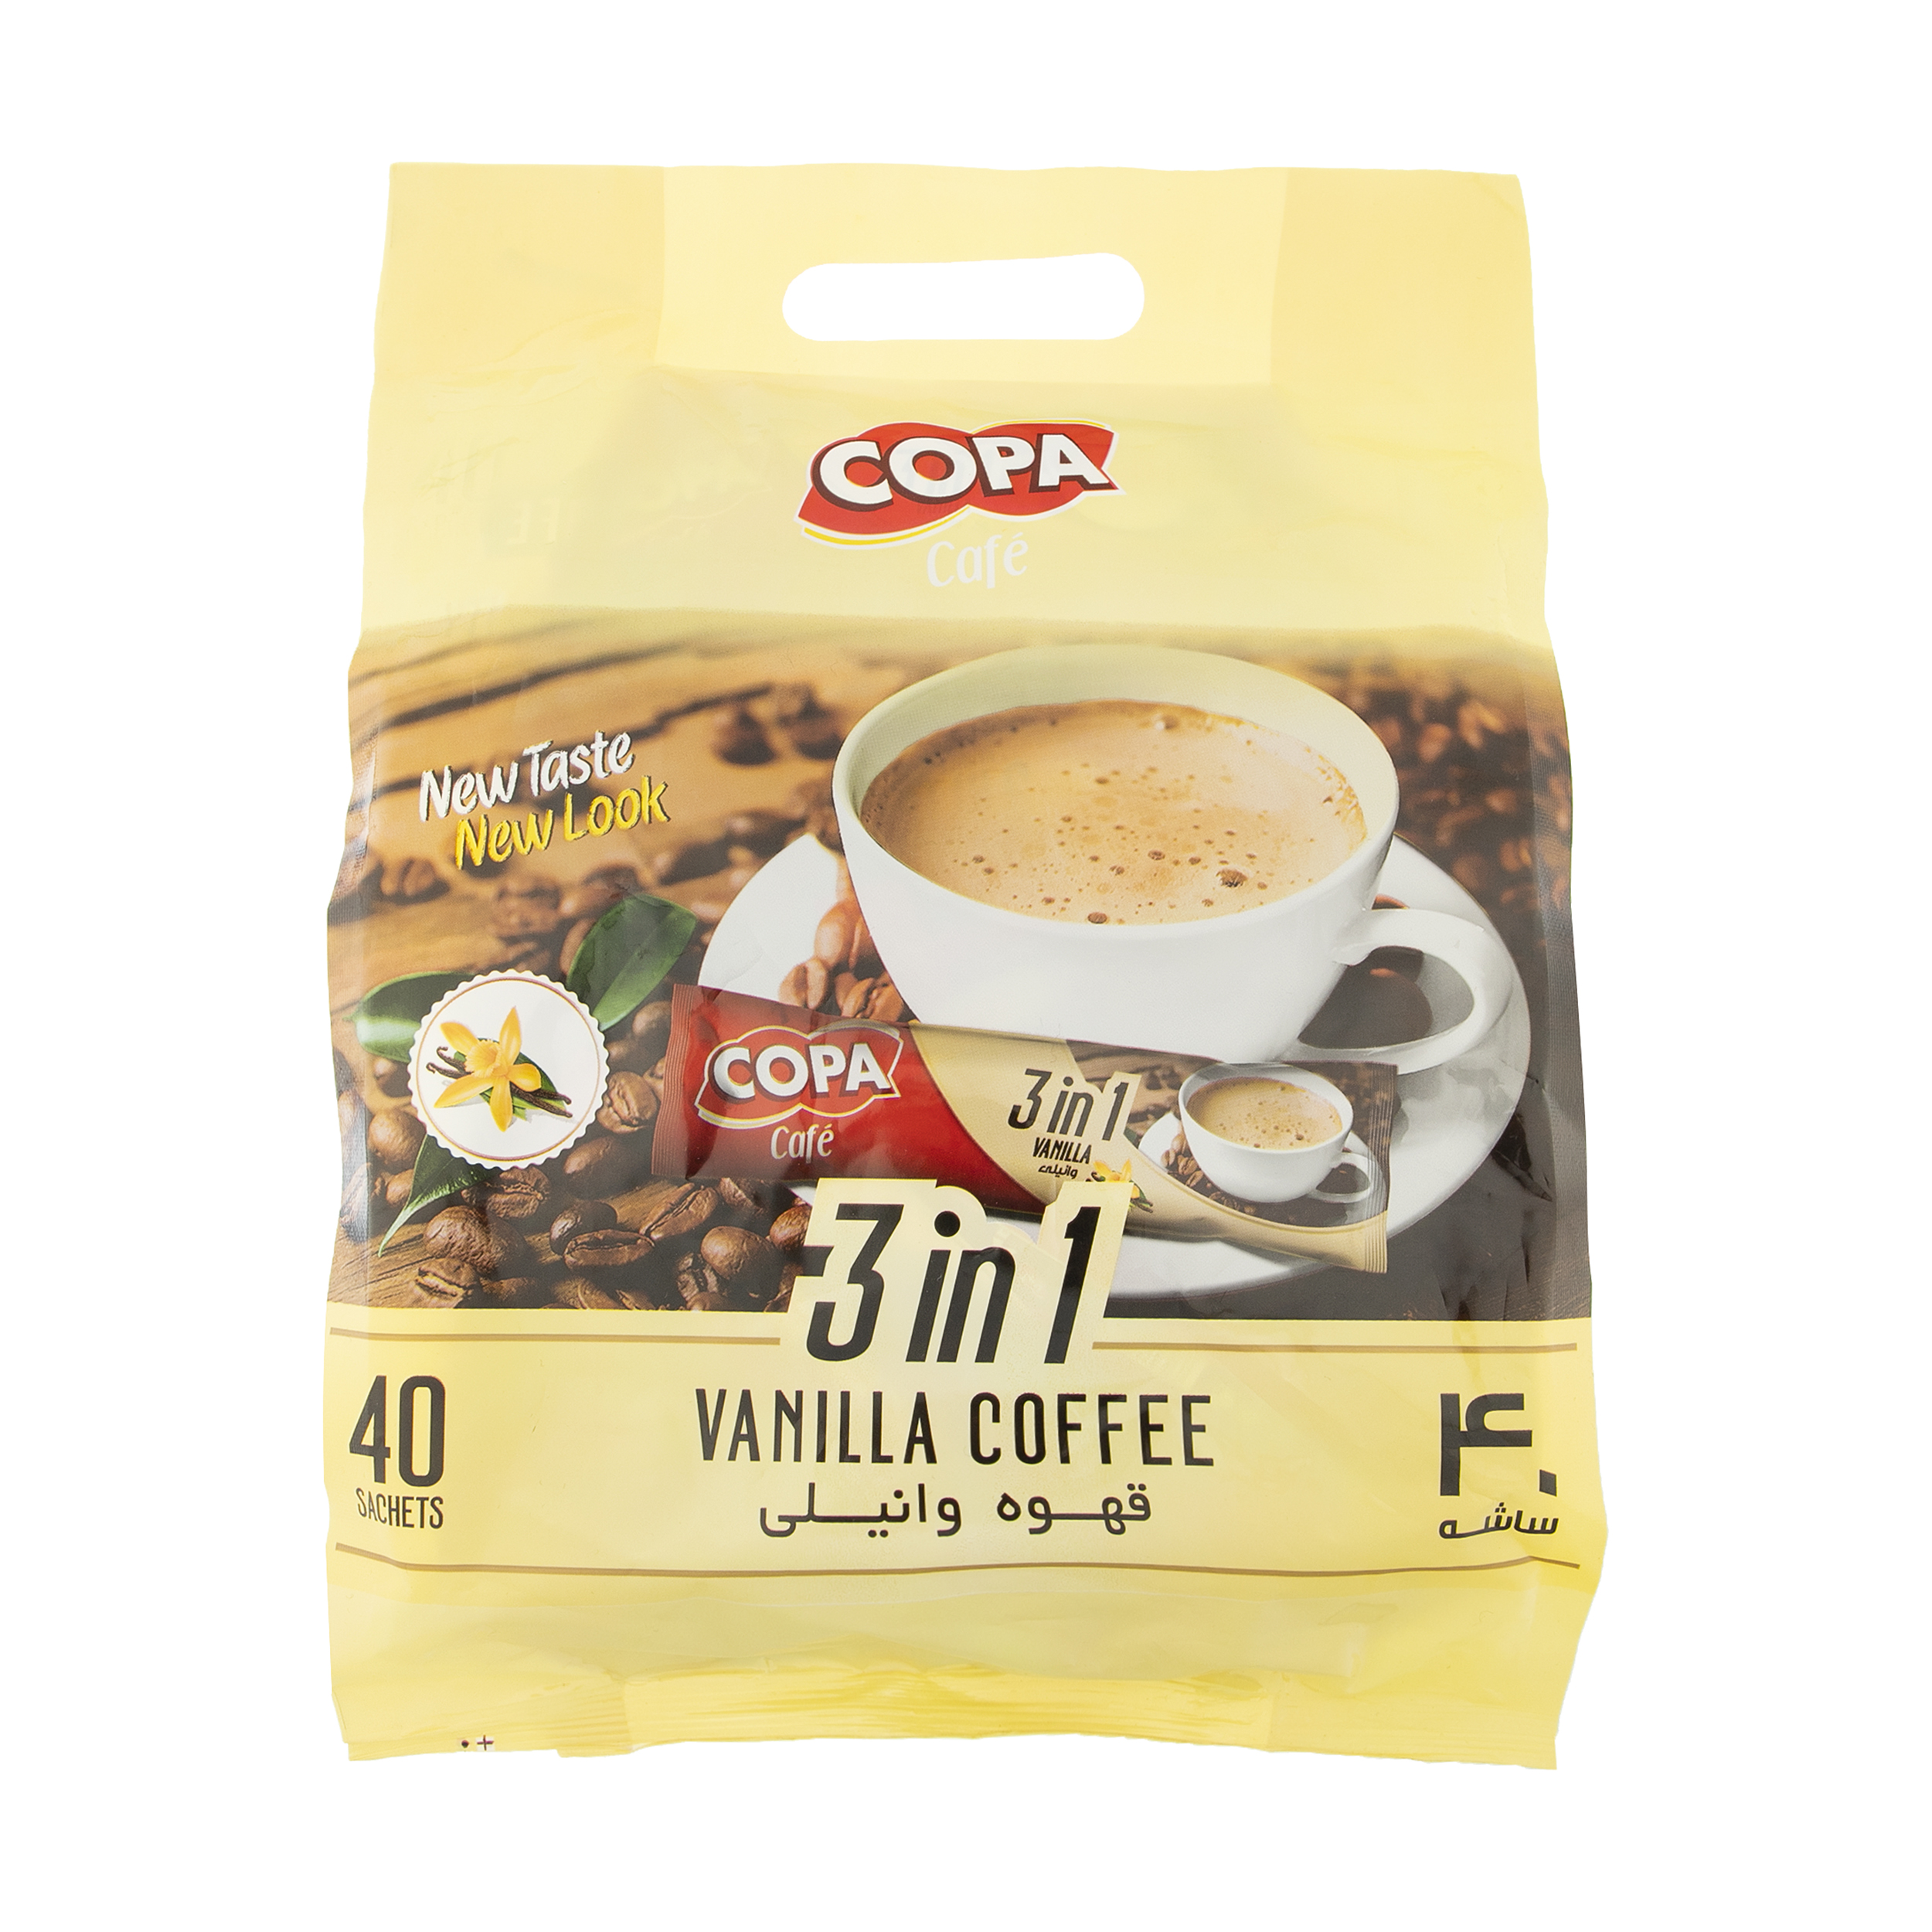 قهوه وانیلی 3 در 1 کوپا -40 ساشه 18 گرمی